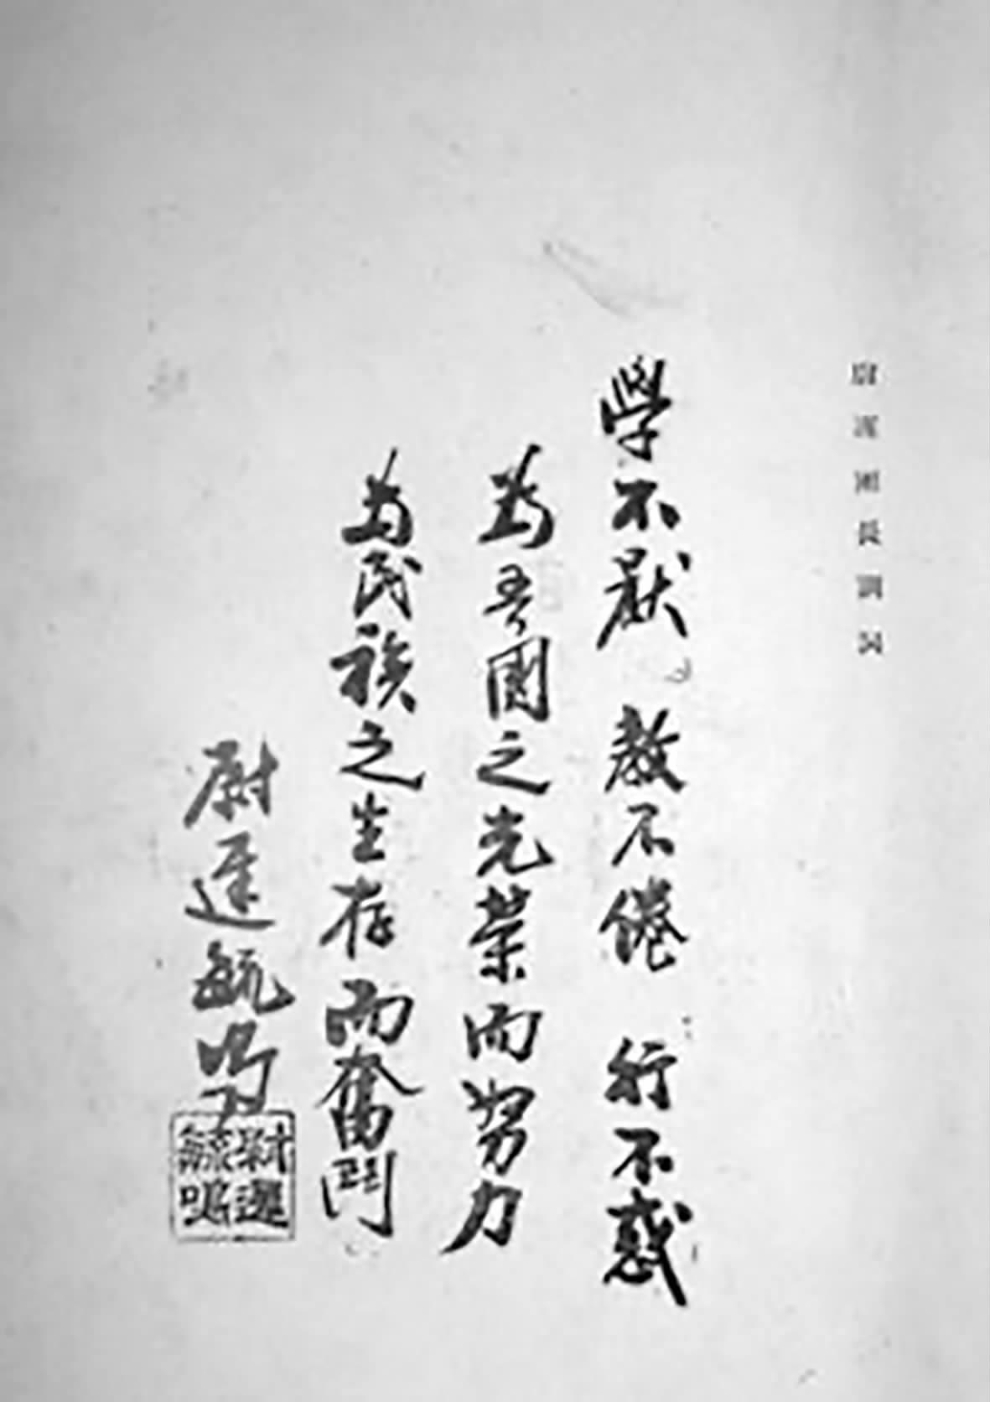 尉迟毓鸣写下条幅表明为国家民族奋斗的决心。